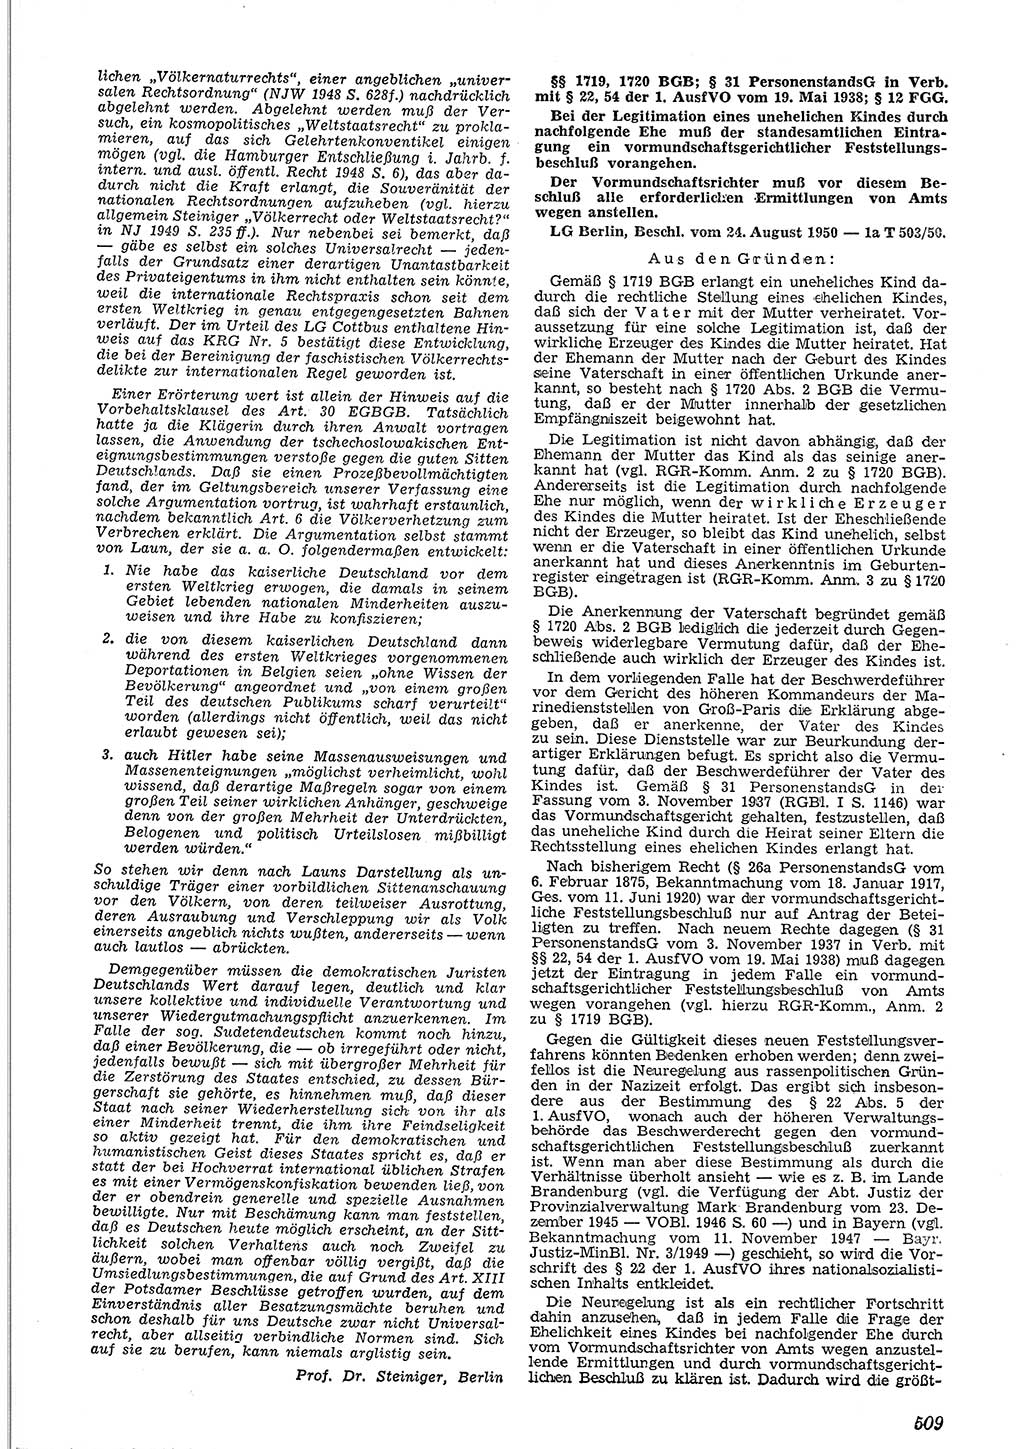 Neue Justiz (NJ), Zeitschrift für Recht und Rechtswissenschaft [Deutsche Demokratische Republik (DDR)], 4. Jahrgang 1950, Seite 509 (NJ DDR 1950, S. 509)